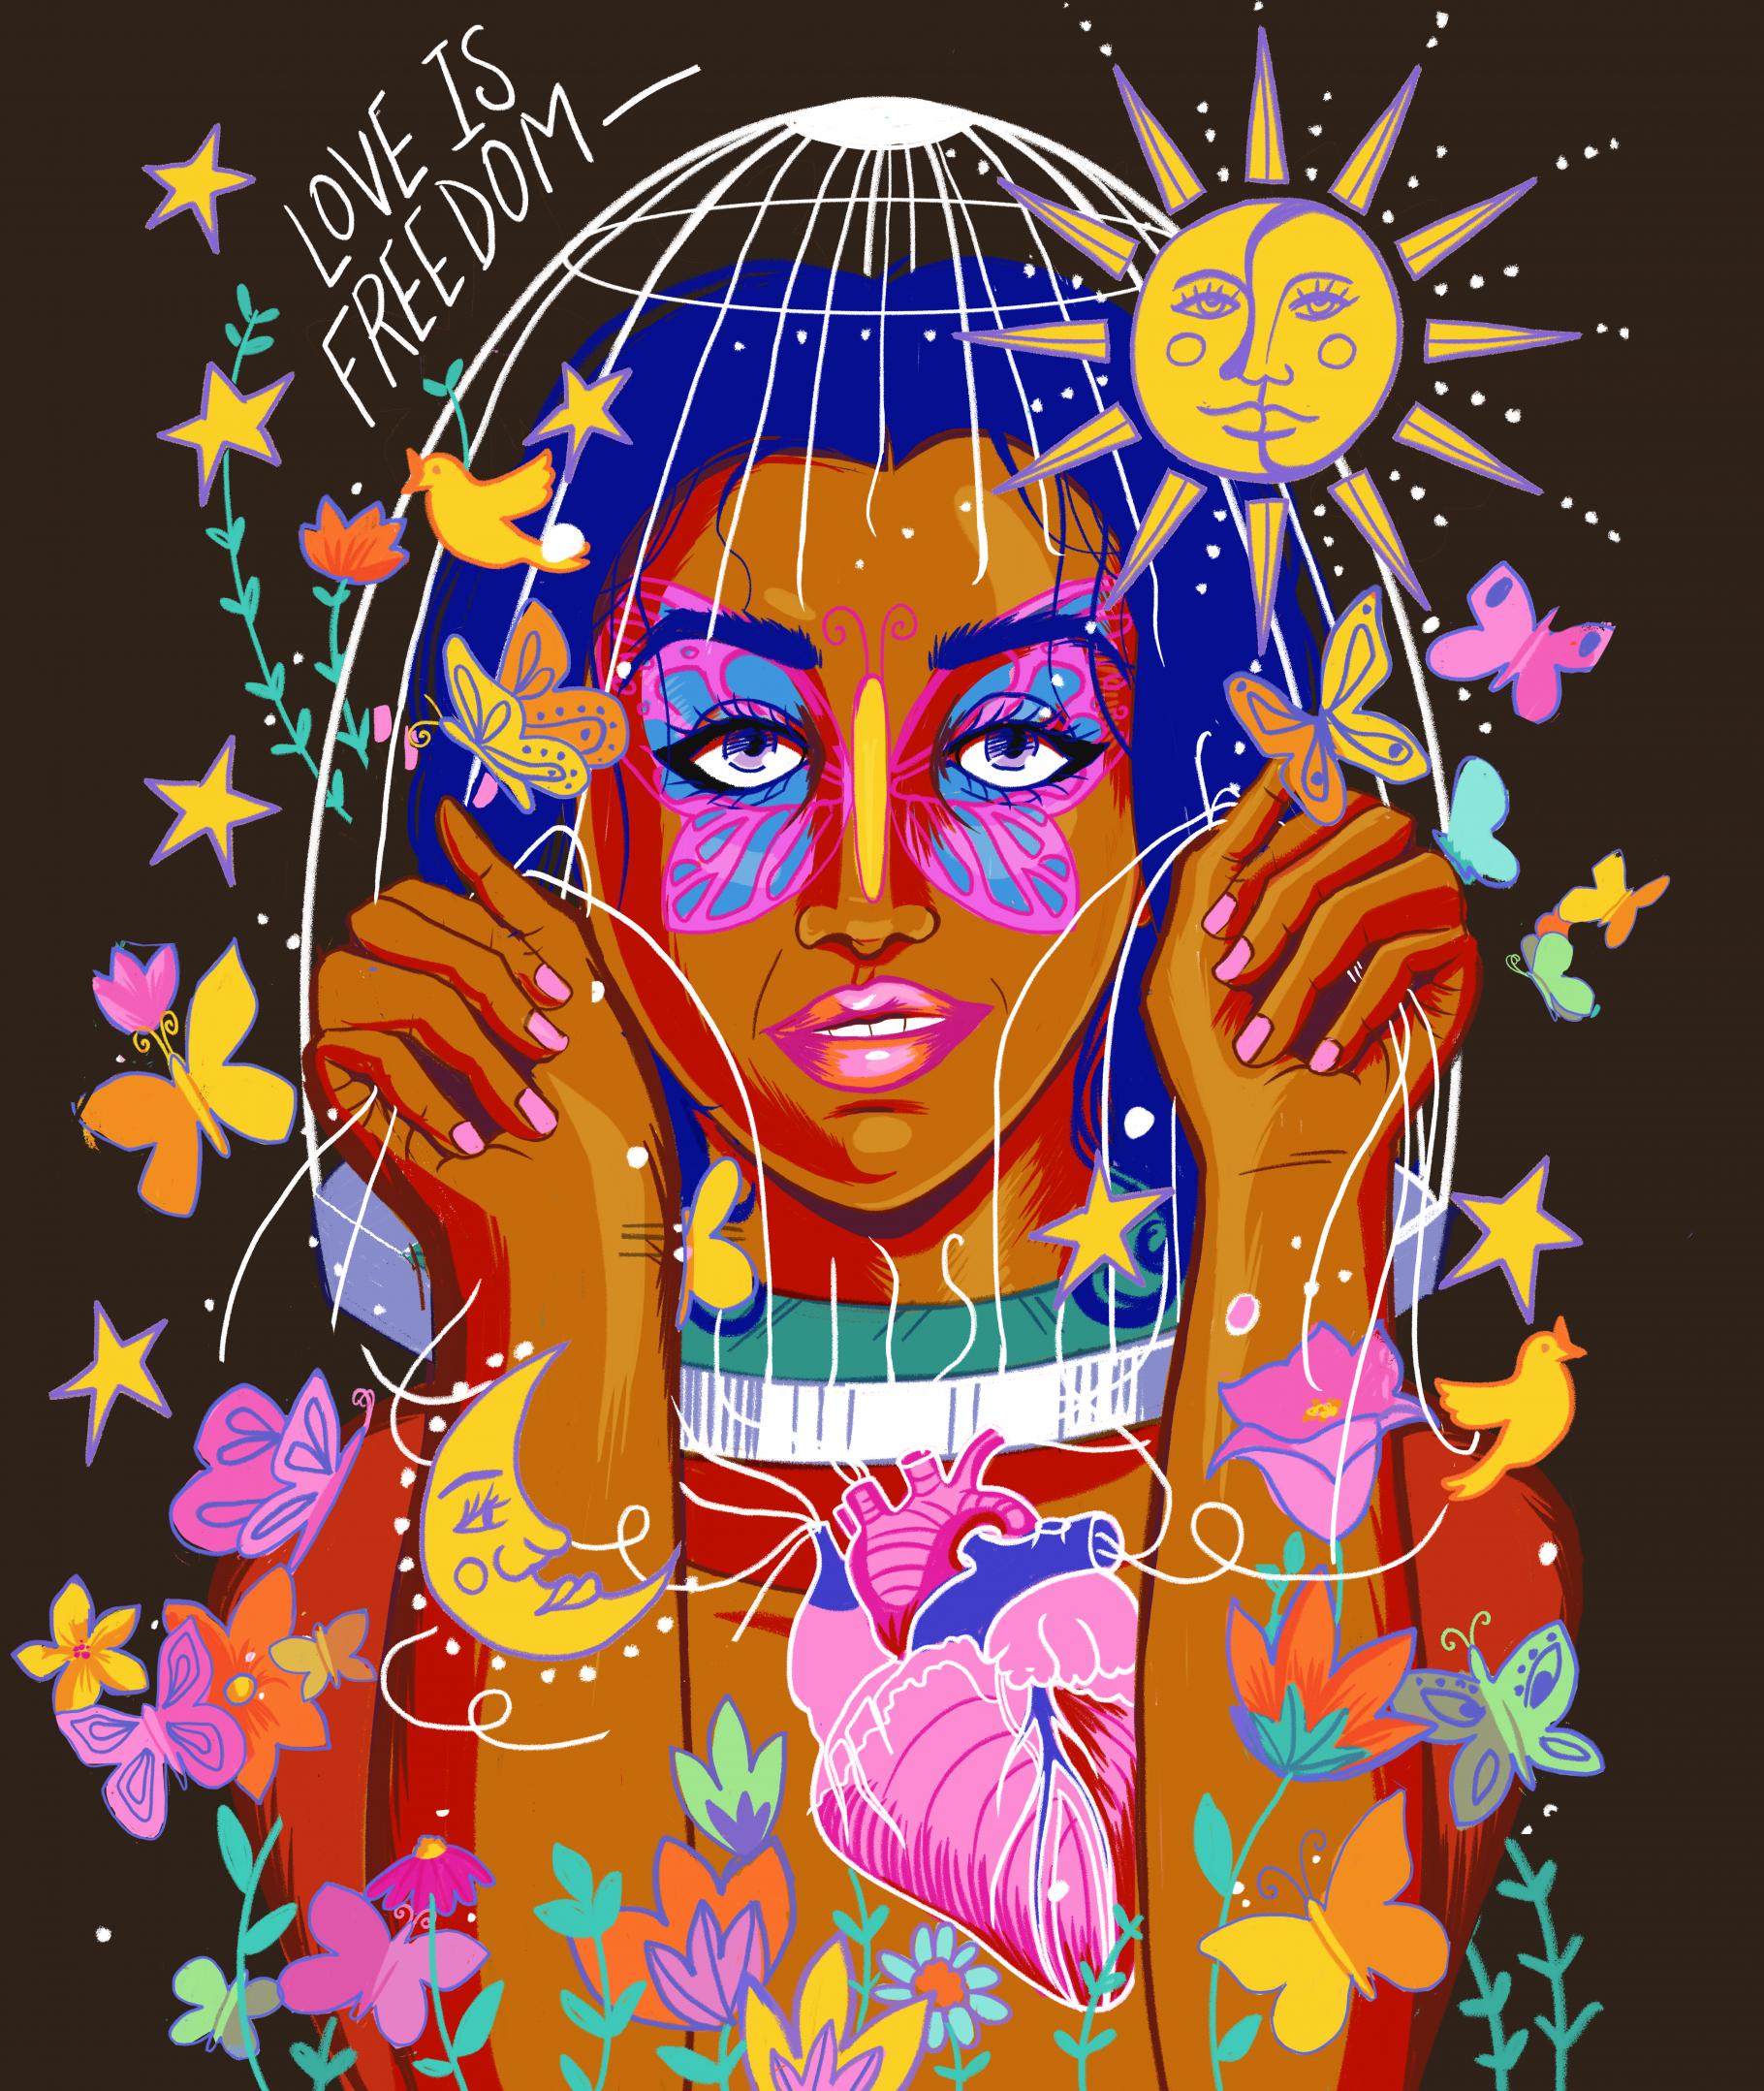 Illustration einer Woman of Color, die sich aus einem Käfig bereit. Um sie herum sind eine Sonne, Schmetterlinge und ein Vodel zu sehen. In der linken oberen Ecke steht "Love is Freedom".